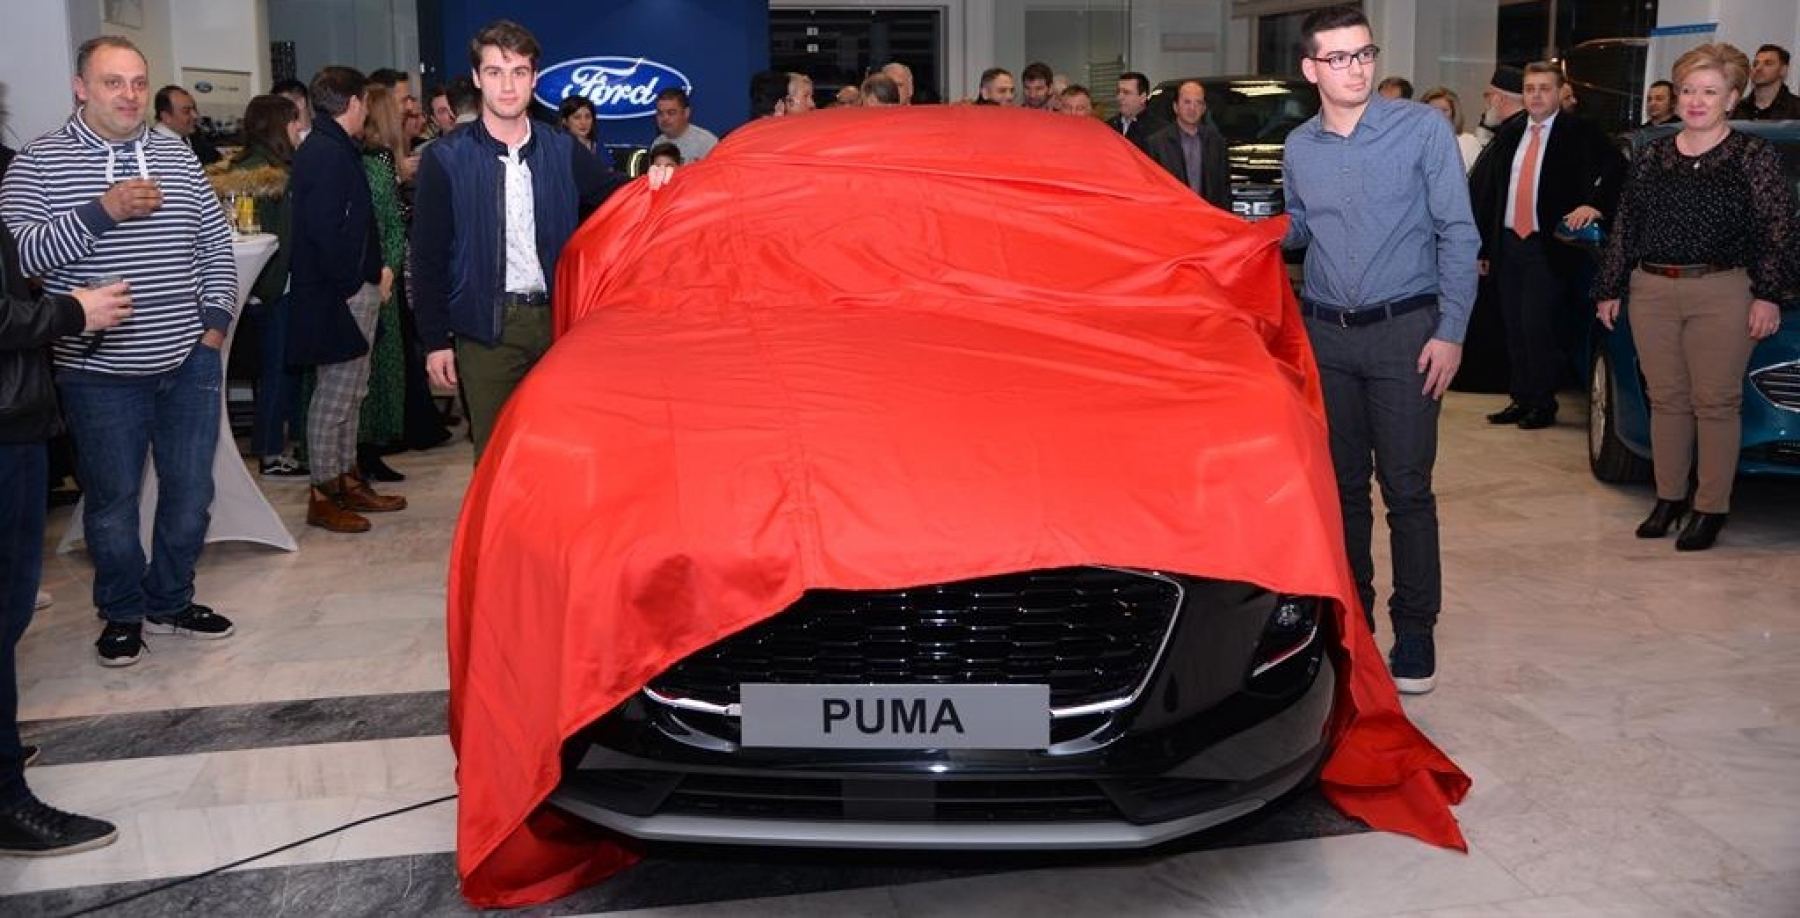 Λαμία: Η Ford Ντουλάκης παρουσίασε το νέο Puma (ΒΙΝΤΕΟ-ΦΩΤΟ)